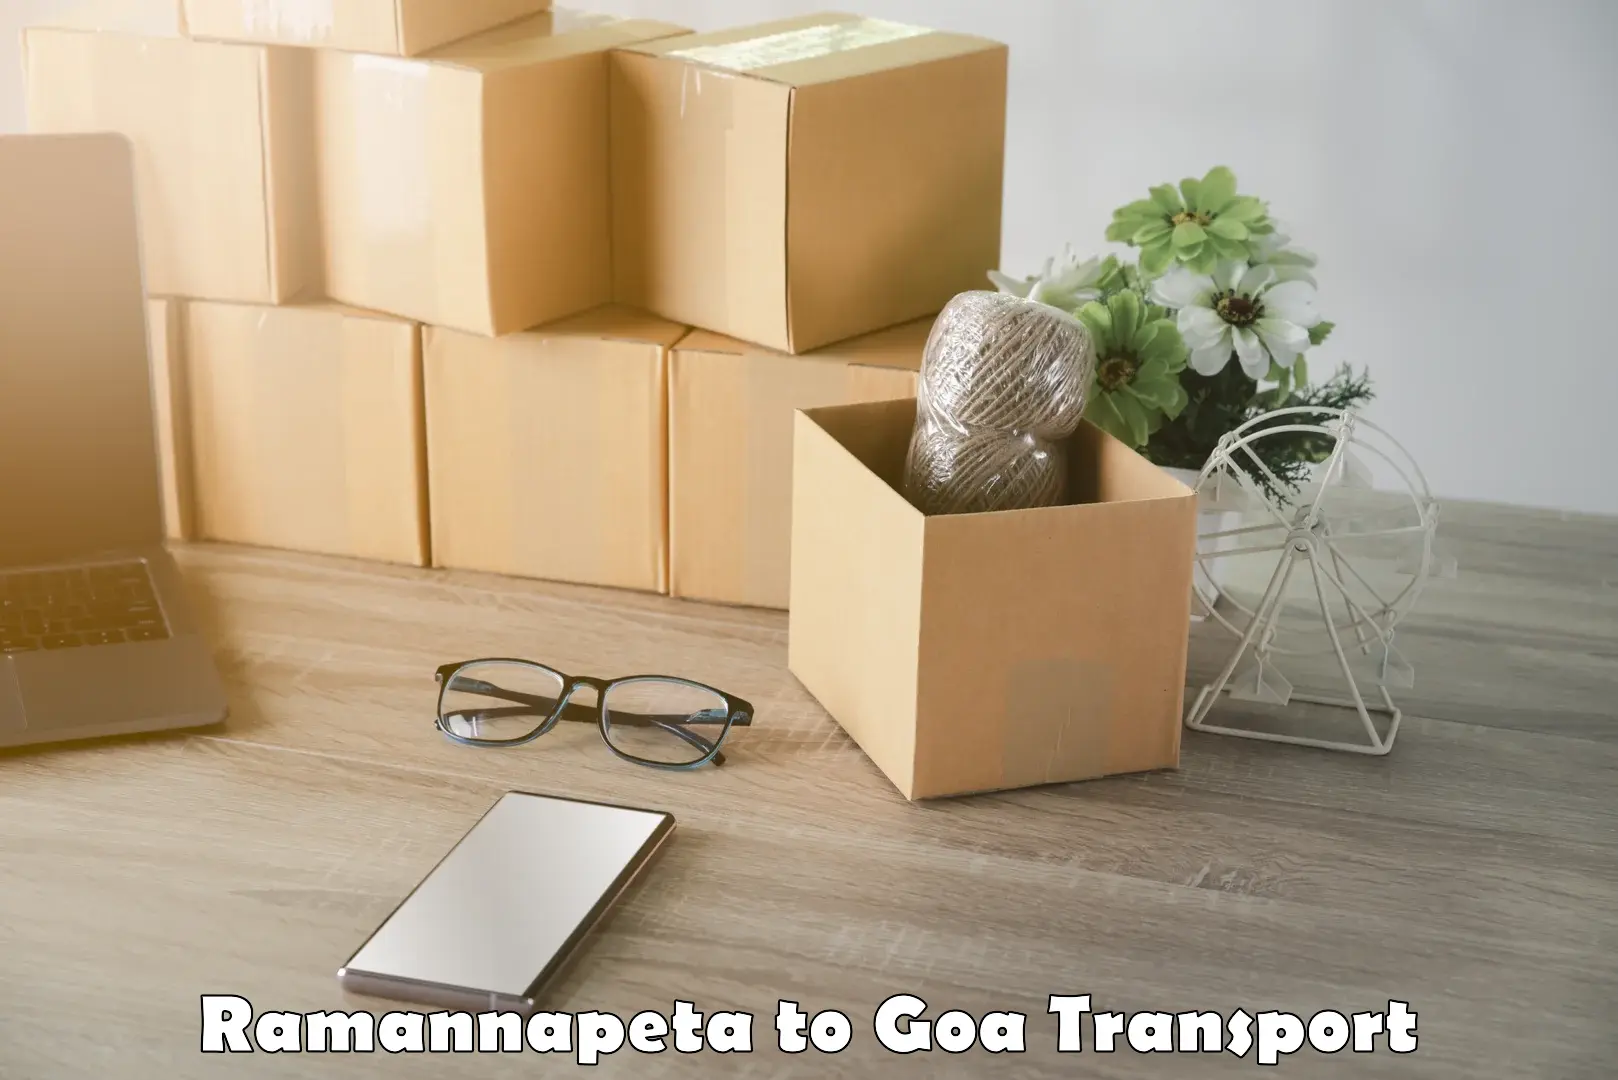 Lorry transport service Ramannapeta to IIT Goa